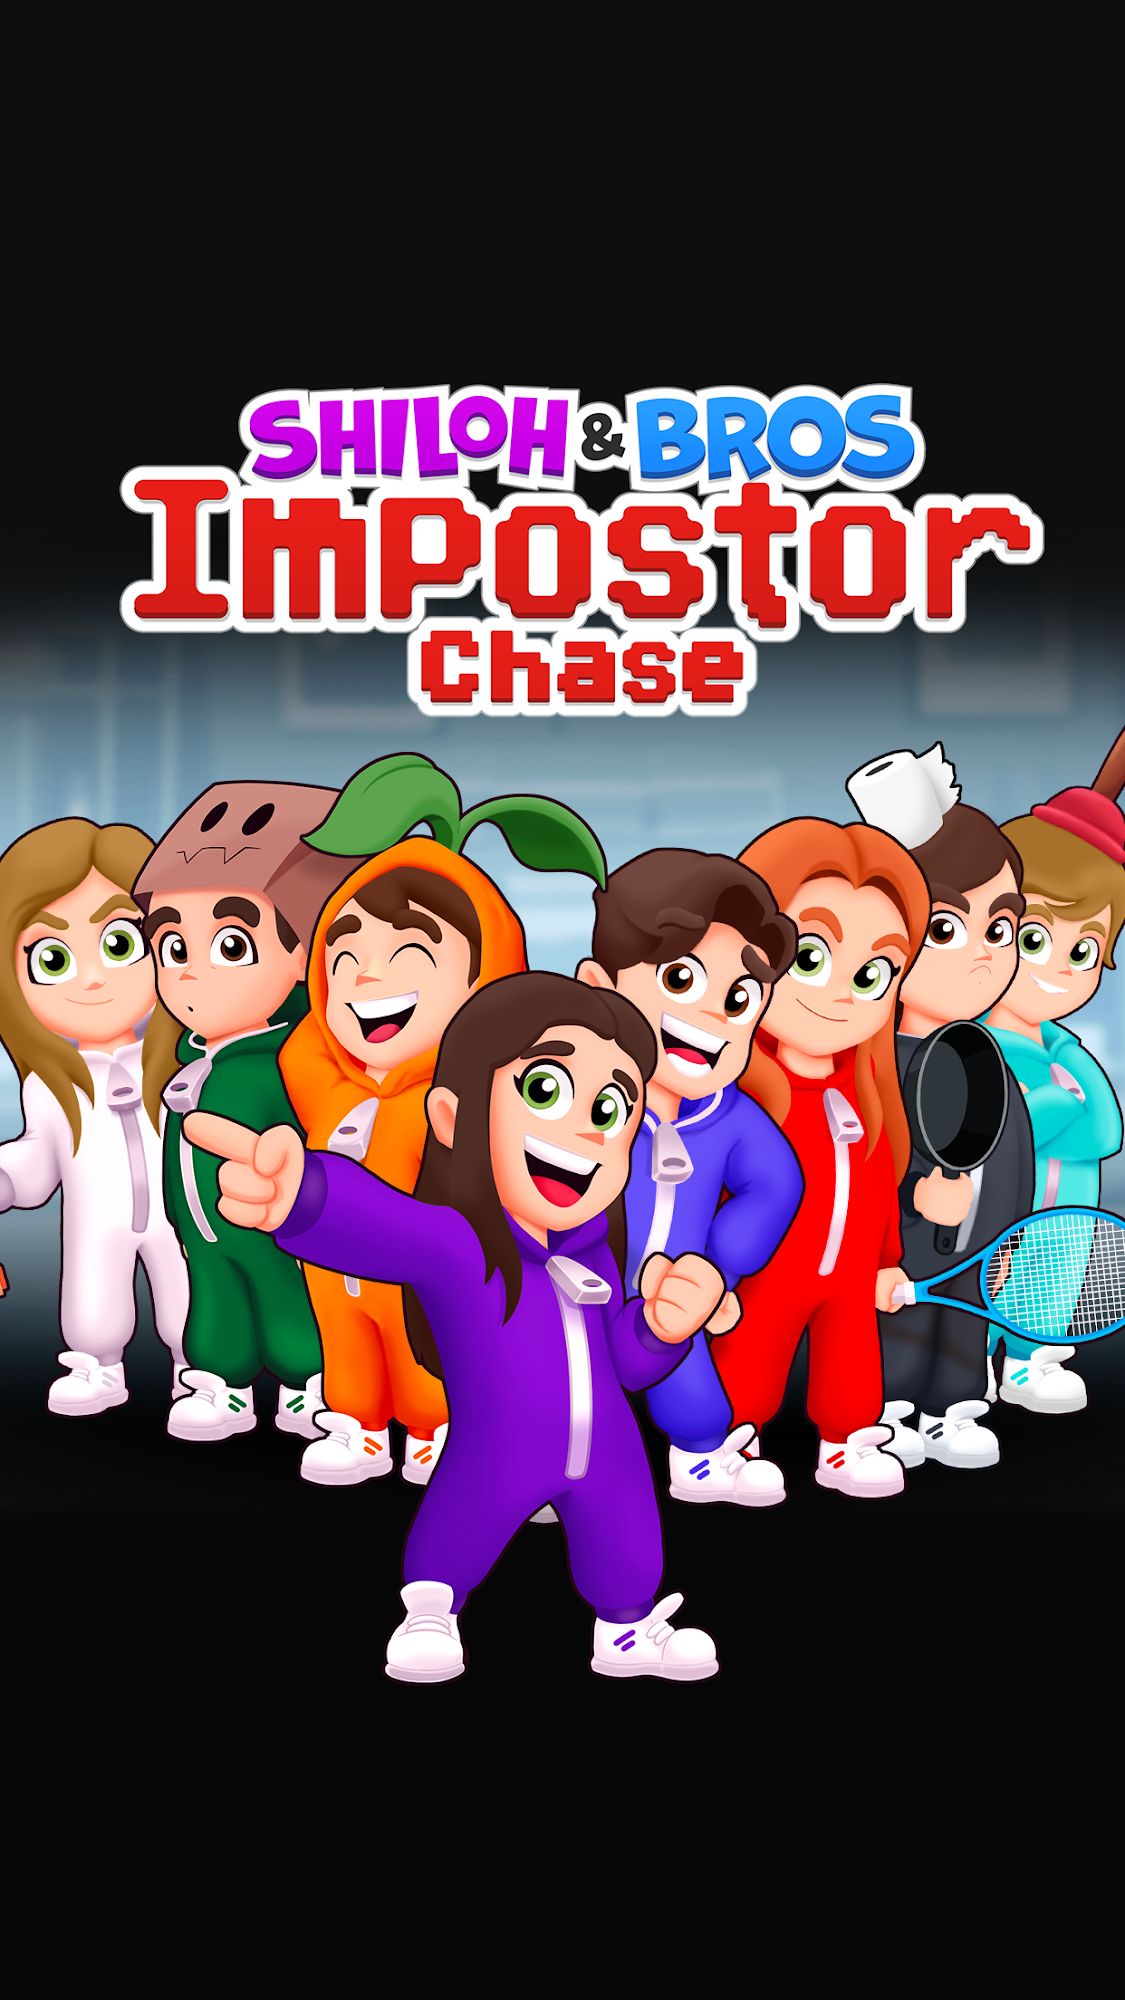 Descargar Shiloh & Bros Impostor Chase gratis para Android.